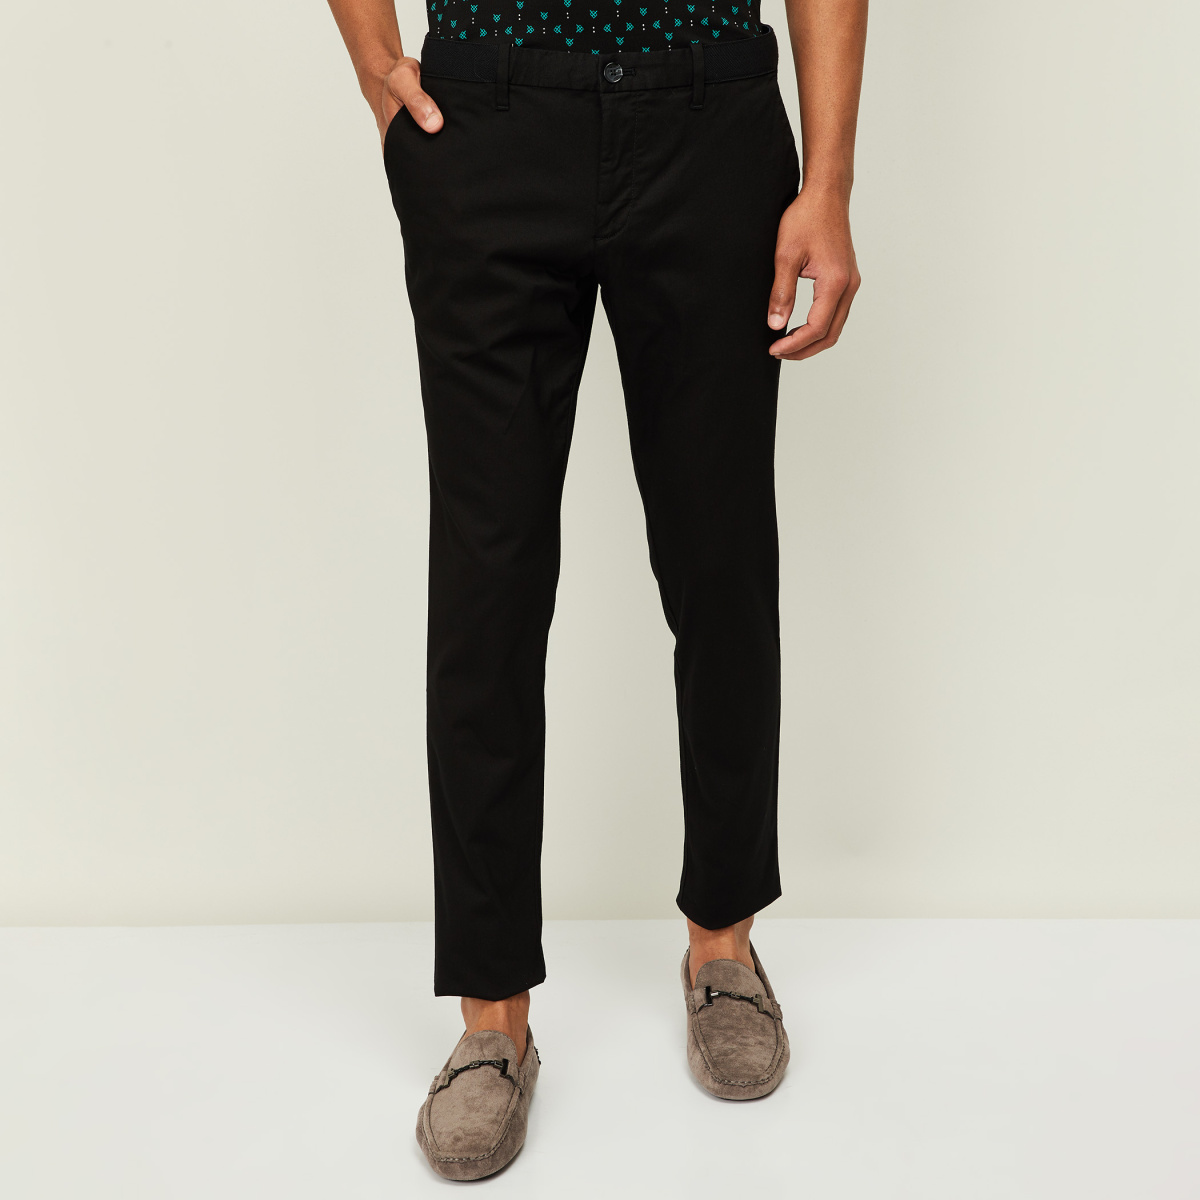 Buy Men Black Solid Slim Fit Trousers Online - 768310 | Van Heusen